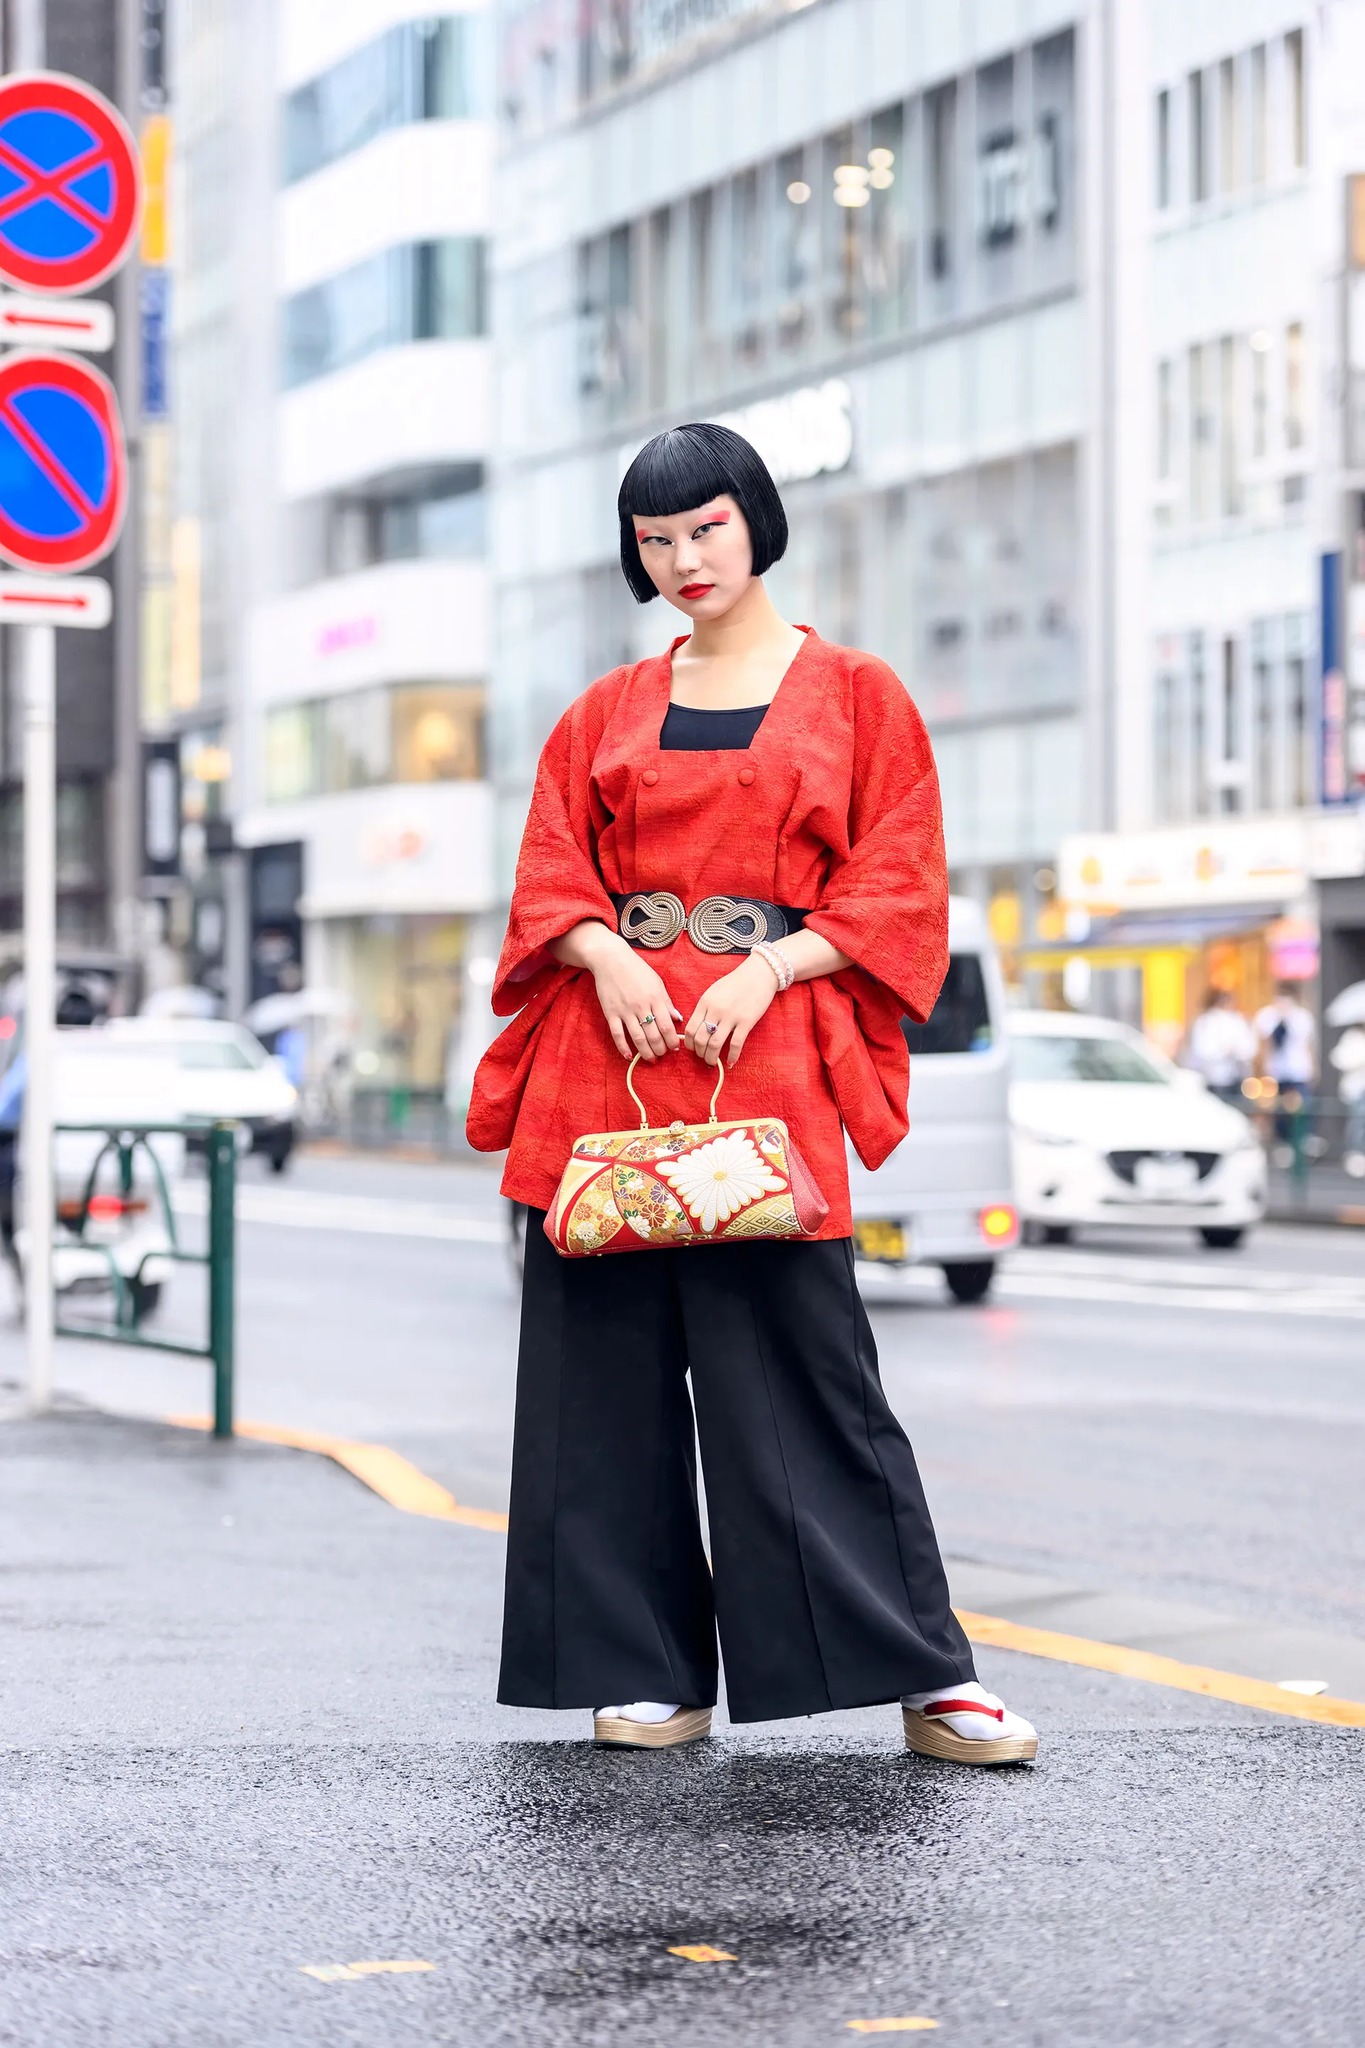 Cô gái diện áo kimoni với thiết kế 2 hàng cúc độc lạ, điểm nhấn là chiếc túi thêu hoạ tiết Nhật Bản.